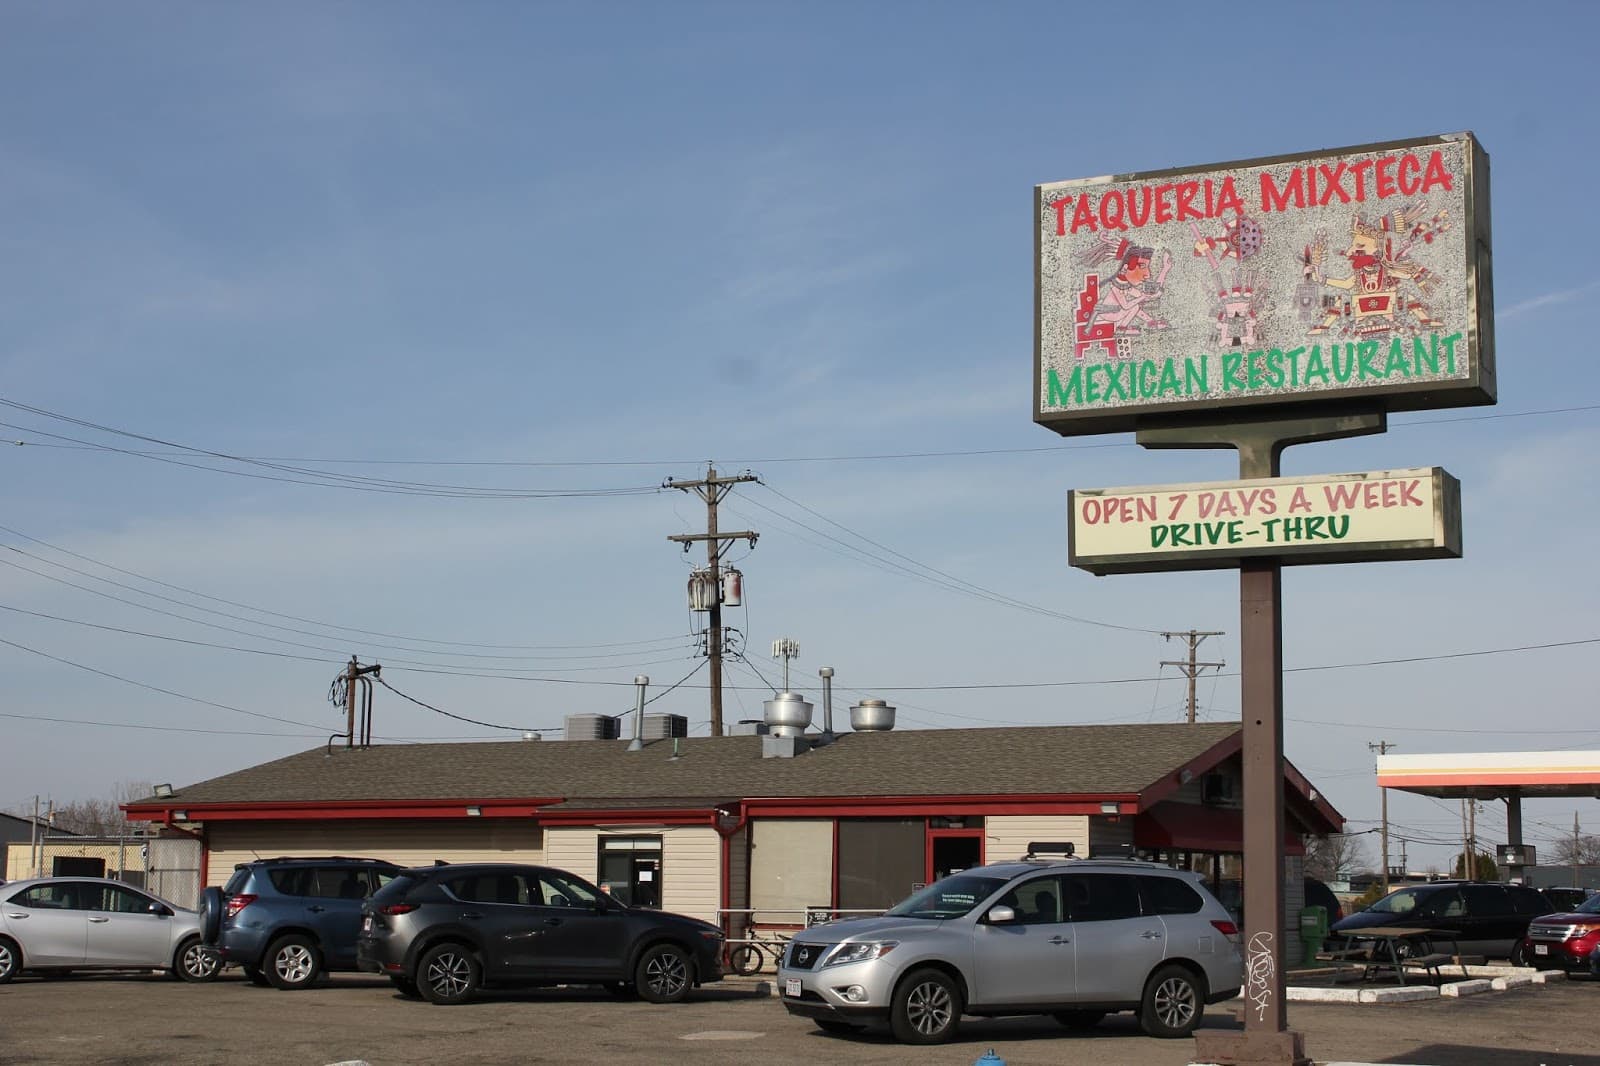 Taqueria Mixteca in Dayton, Ohio